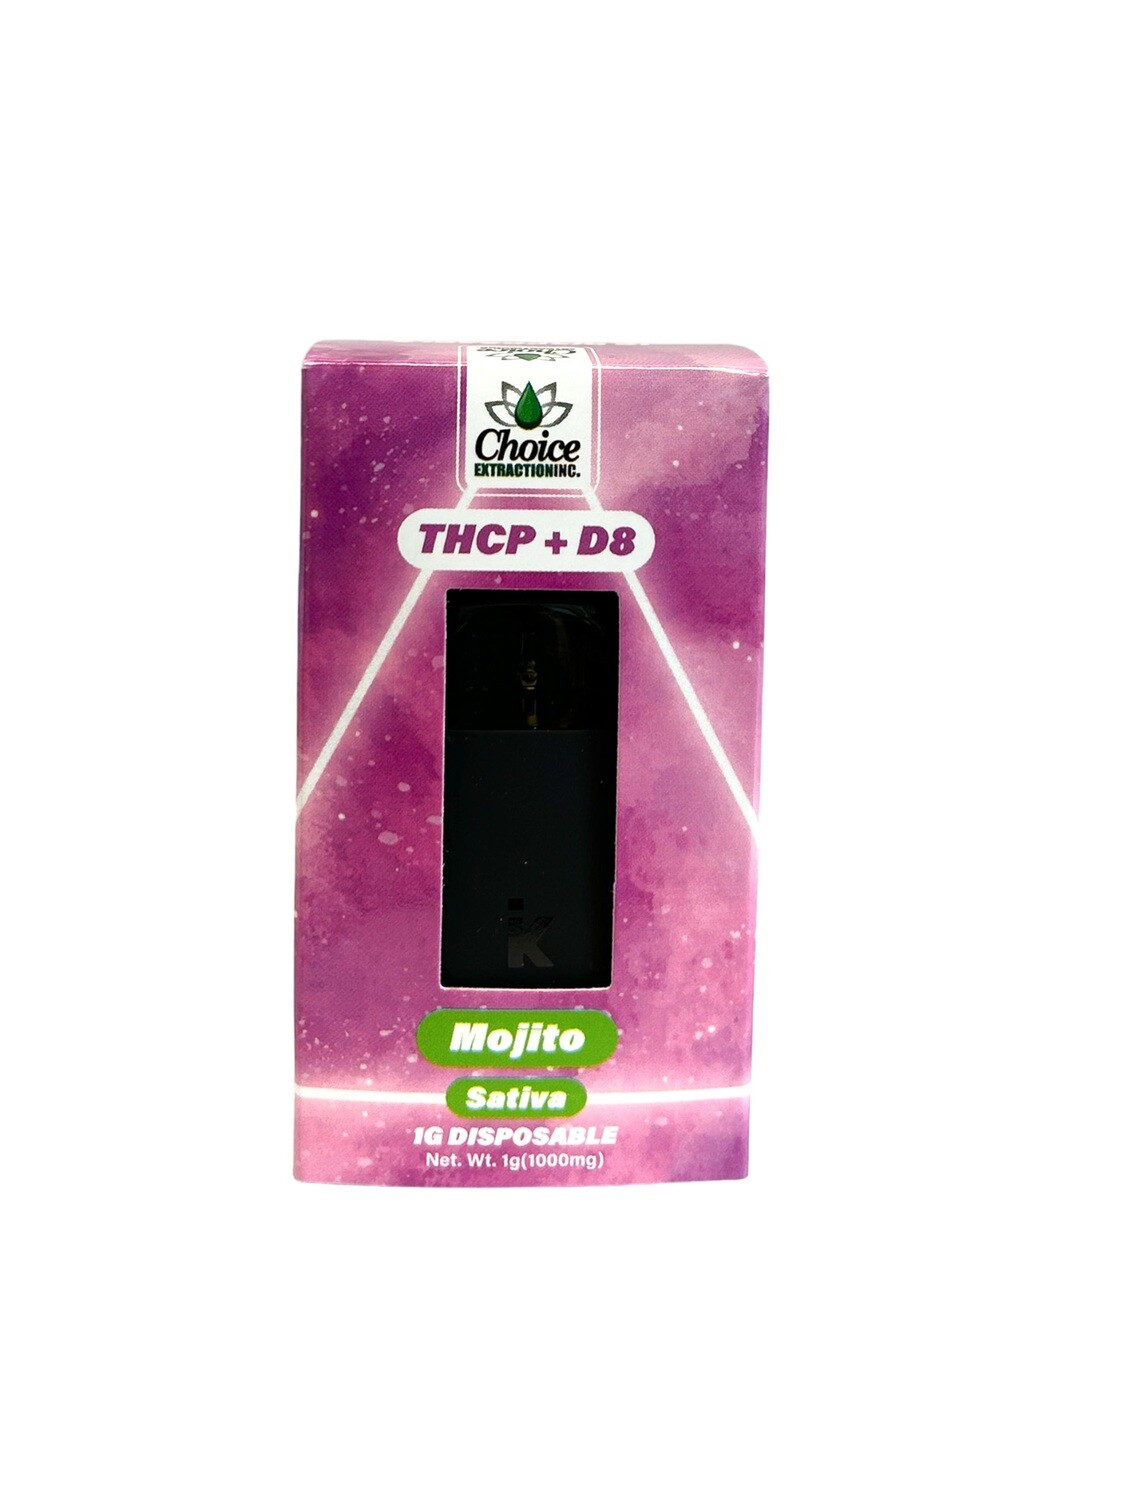 THCP + D8 Disposable - Mojito 1mL - Sativa